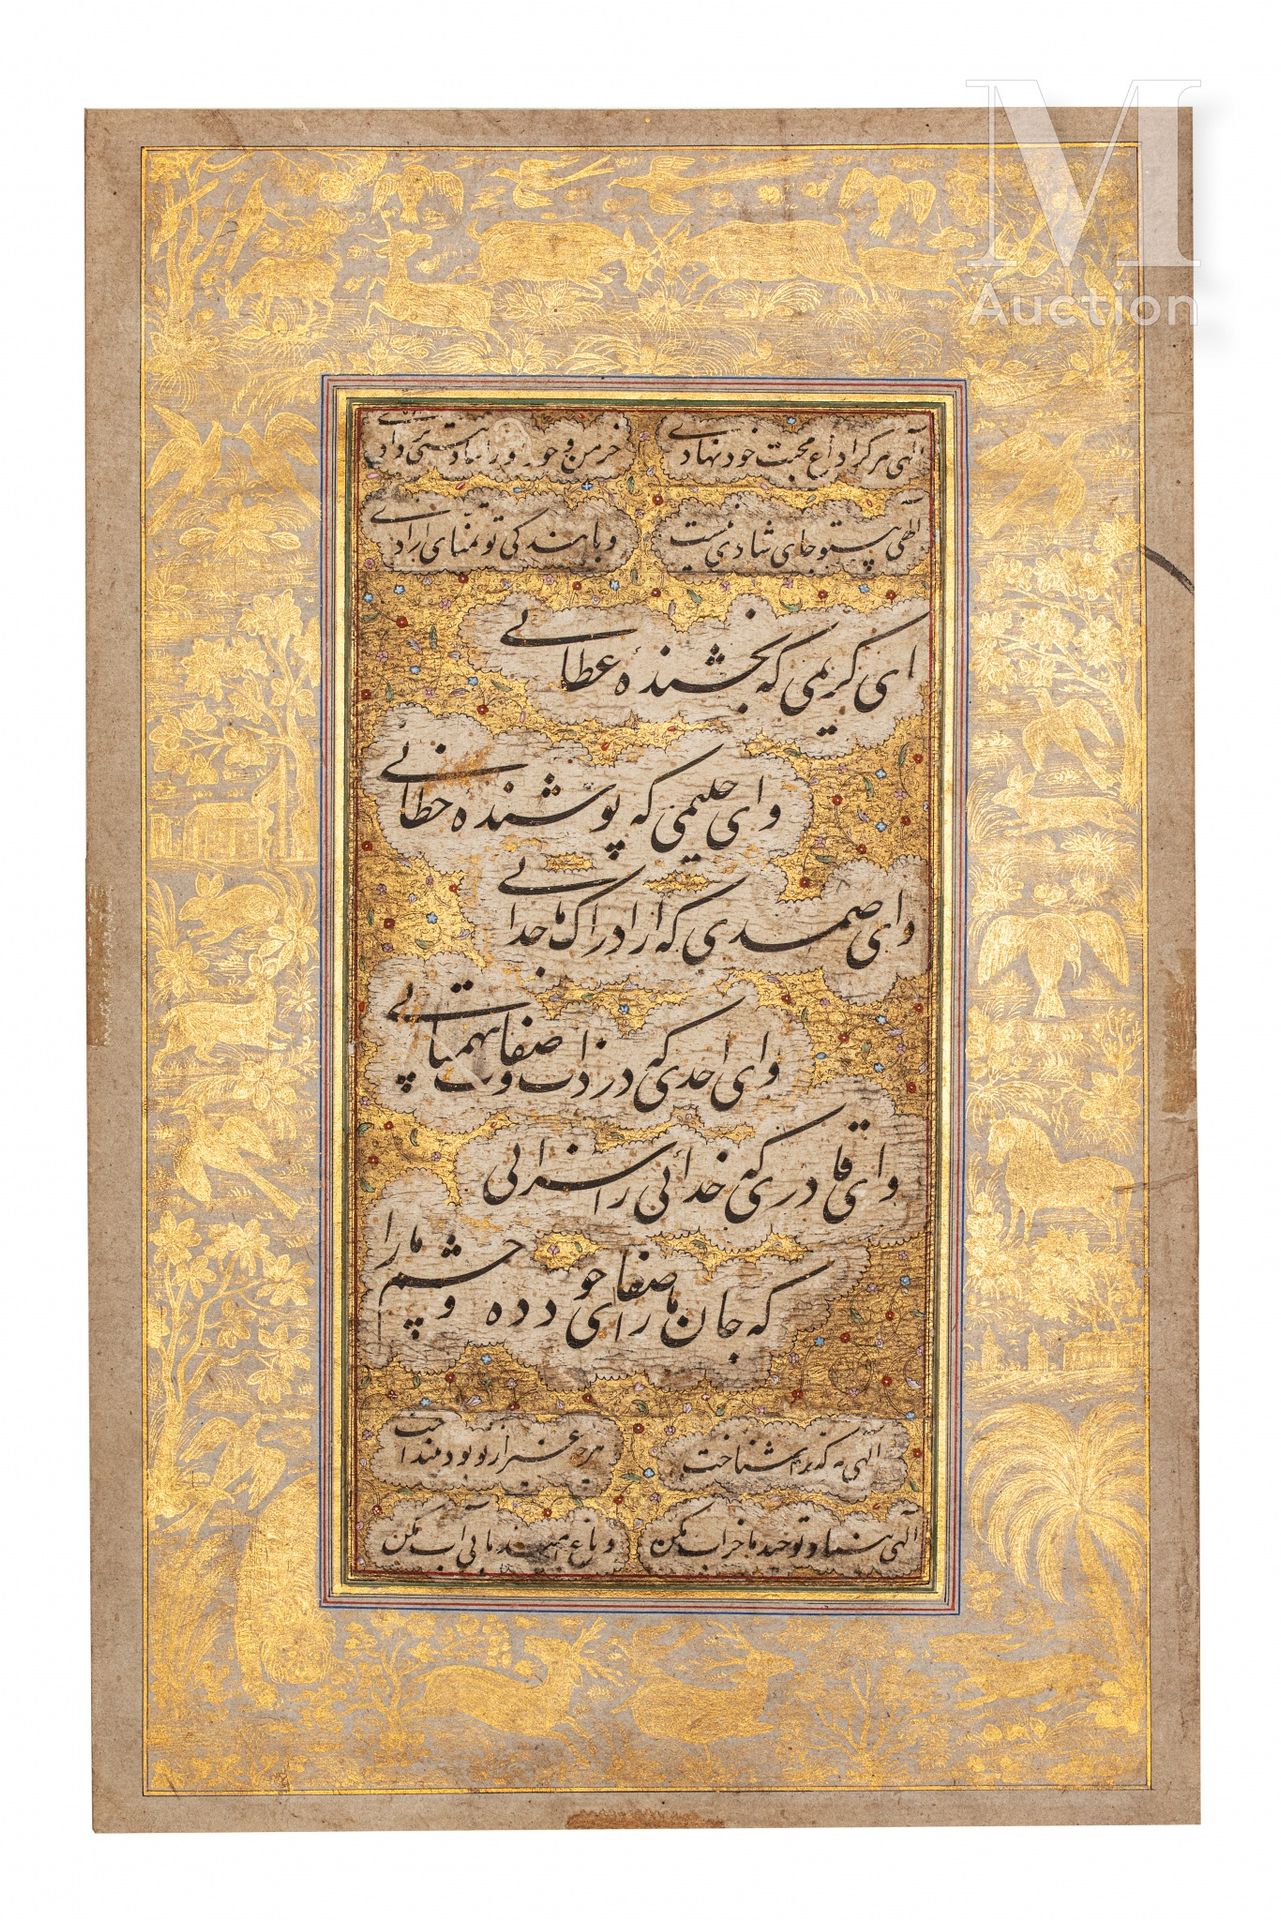 Calligraphie moghole Indien, 18. Jahrhundert

Albumseite, bestehend aus einer Na&hellip;